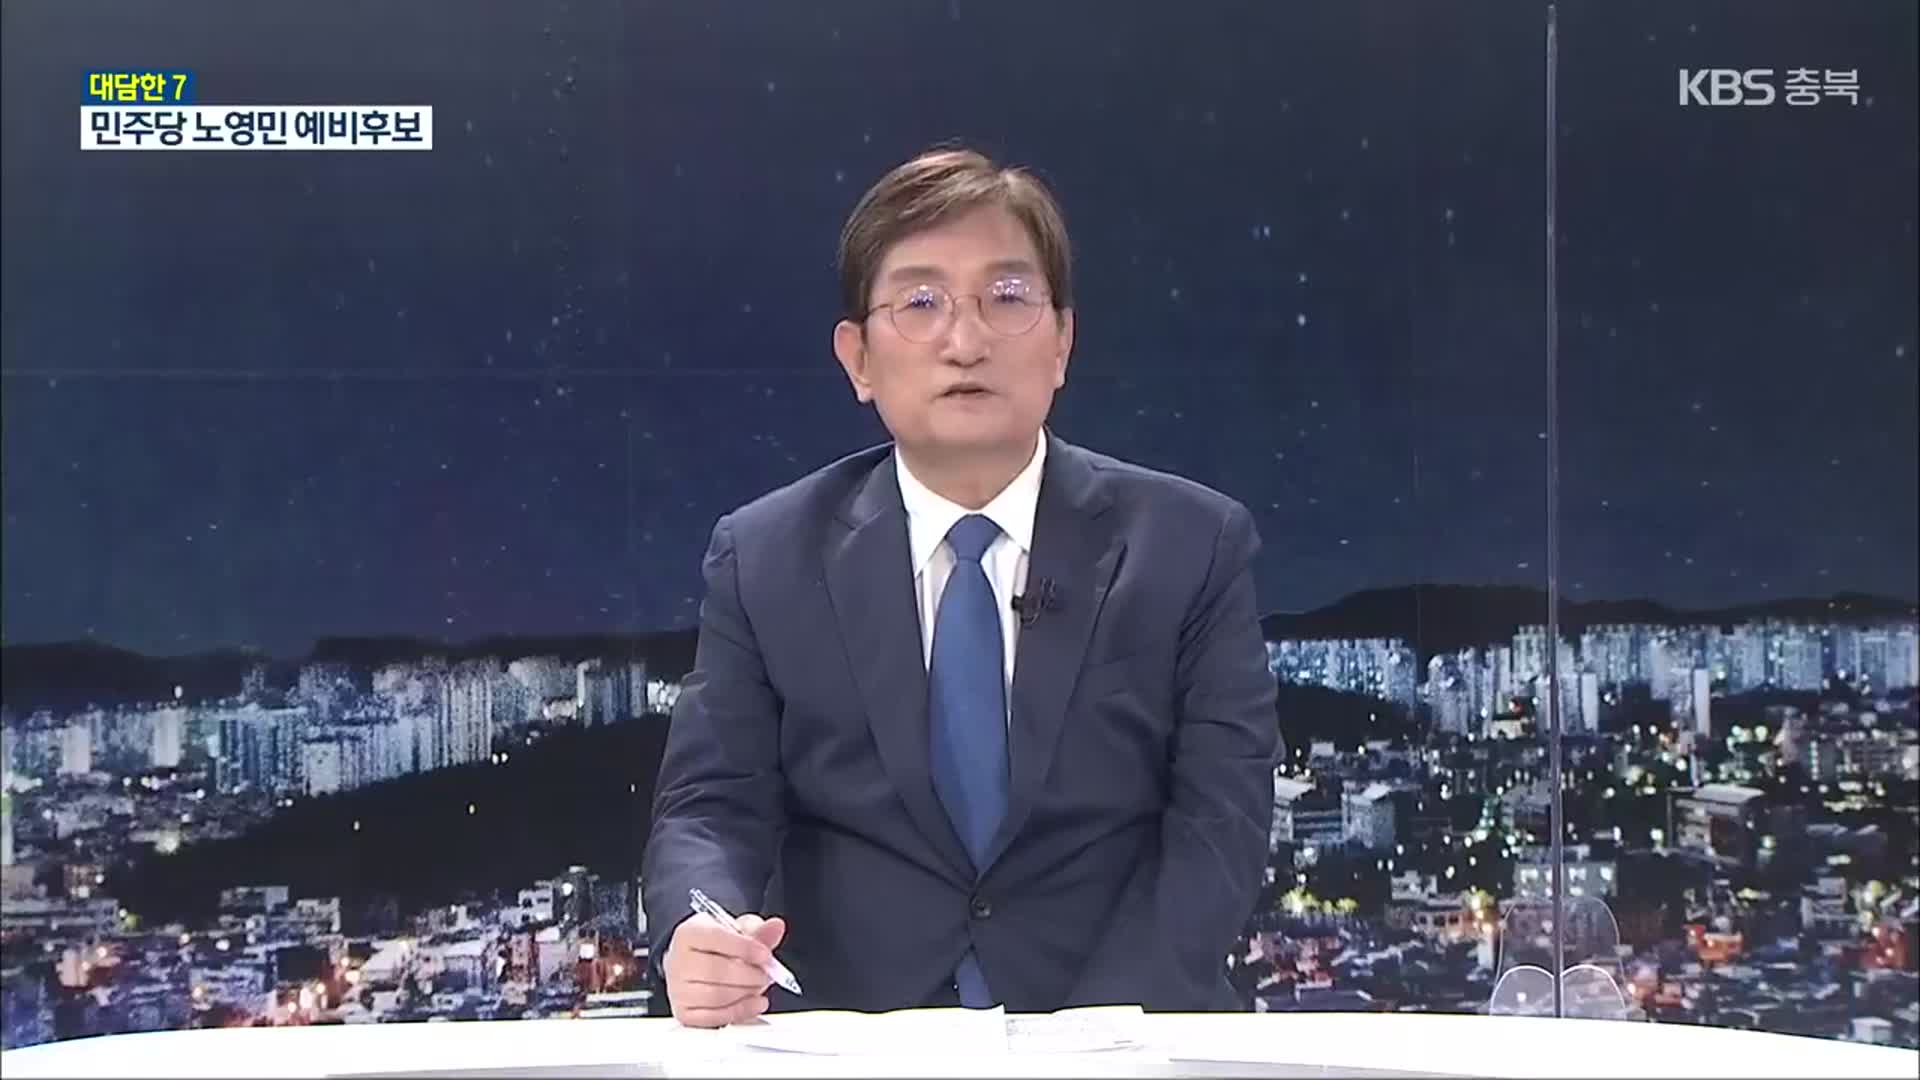 [대담한7] 노영민 민주당 충북지사 후보에게 듣는다